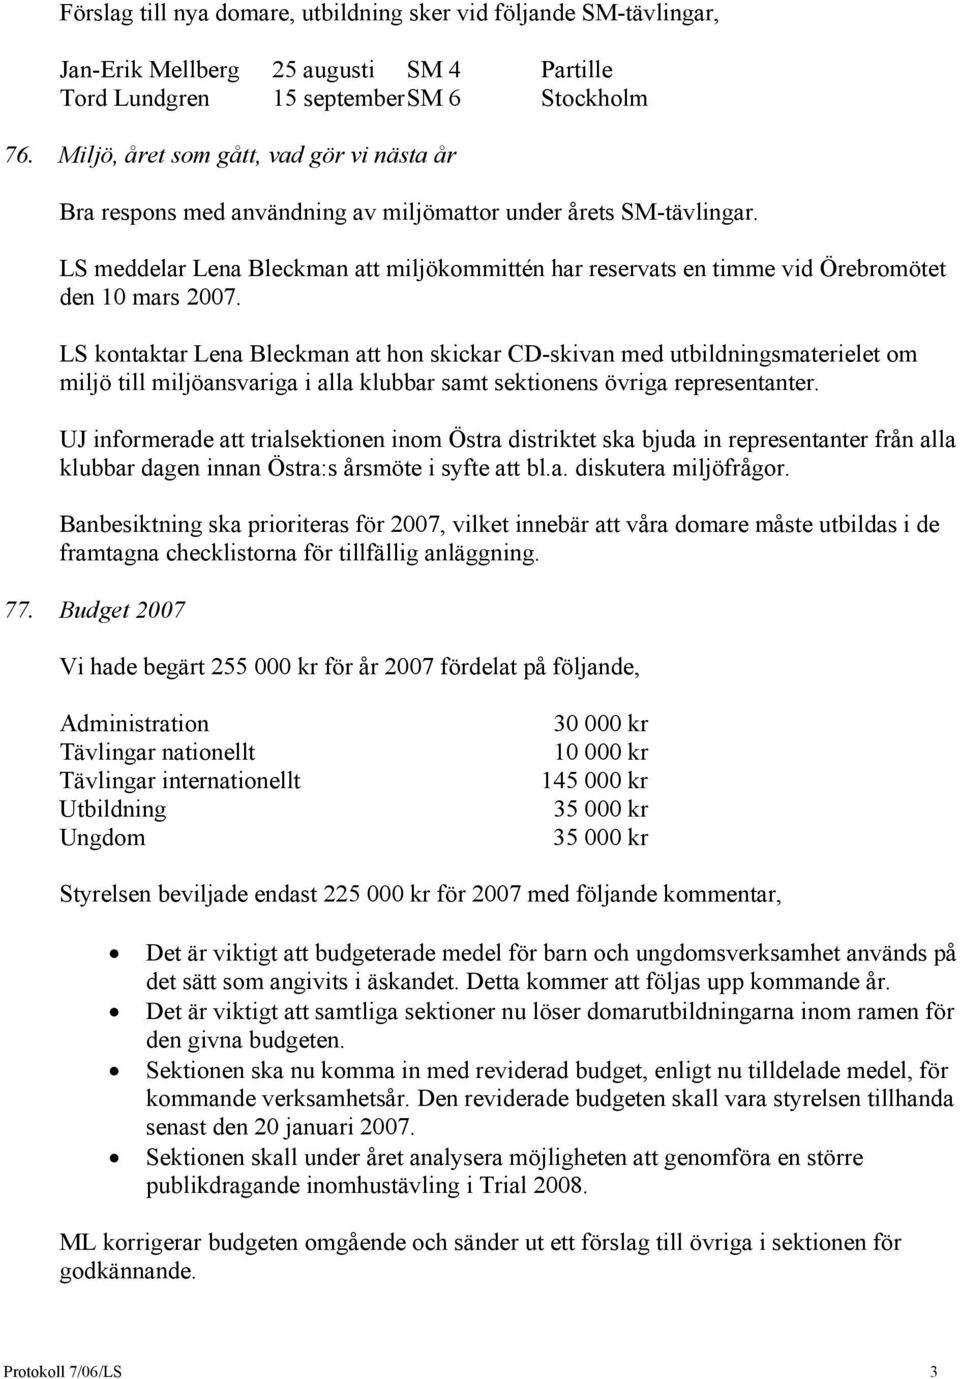 LS meddelar Lena Bleckman att miljökommittén har reservats en timme vid Örebromötet den 10 mars 2007.